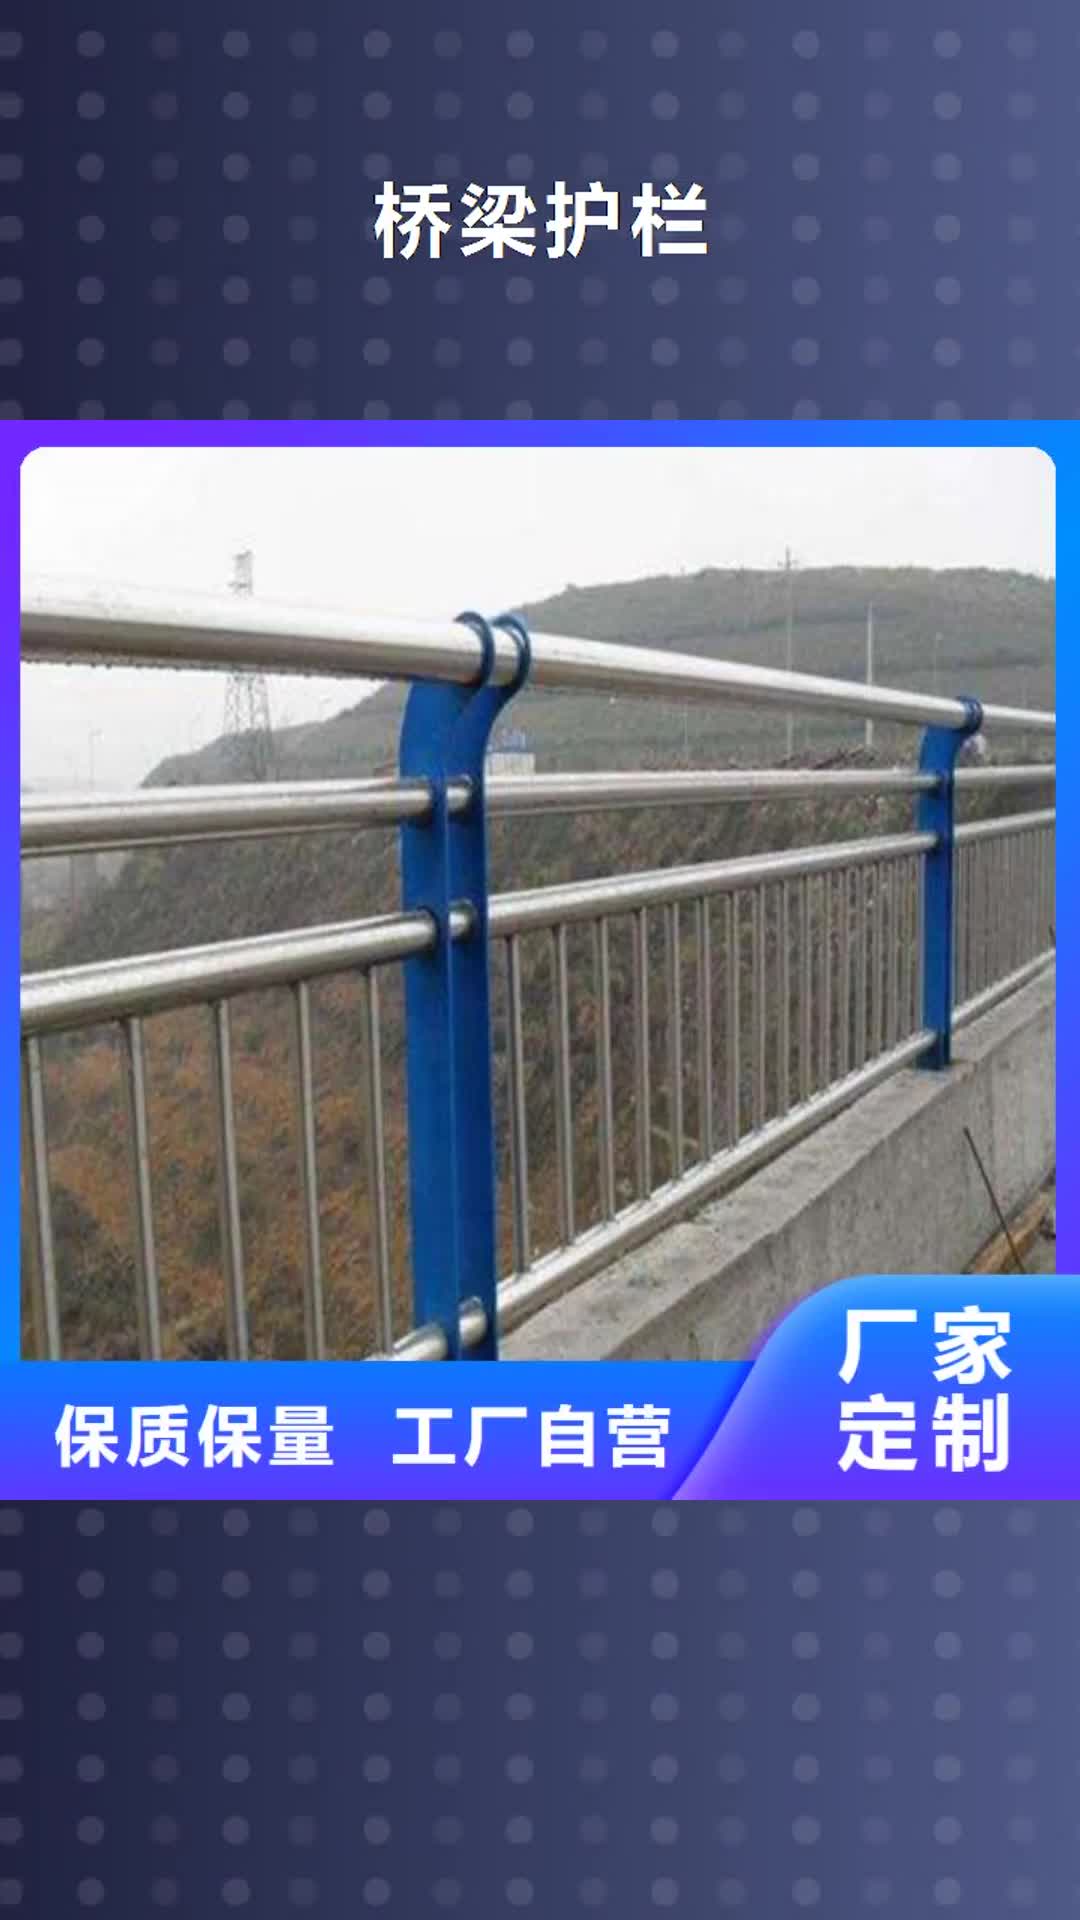 【崇左 桥梁护栏,不锈钢绳索护栏使用寿命长久】